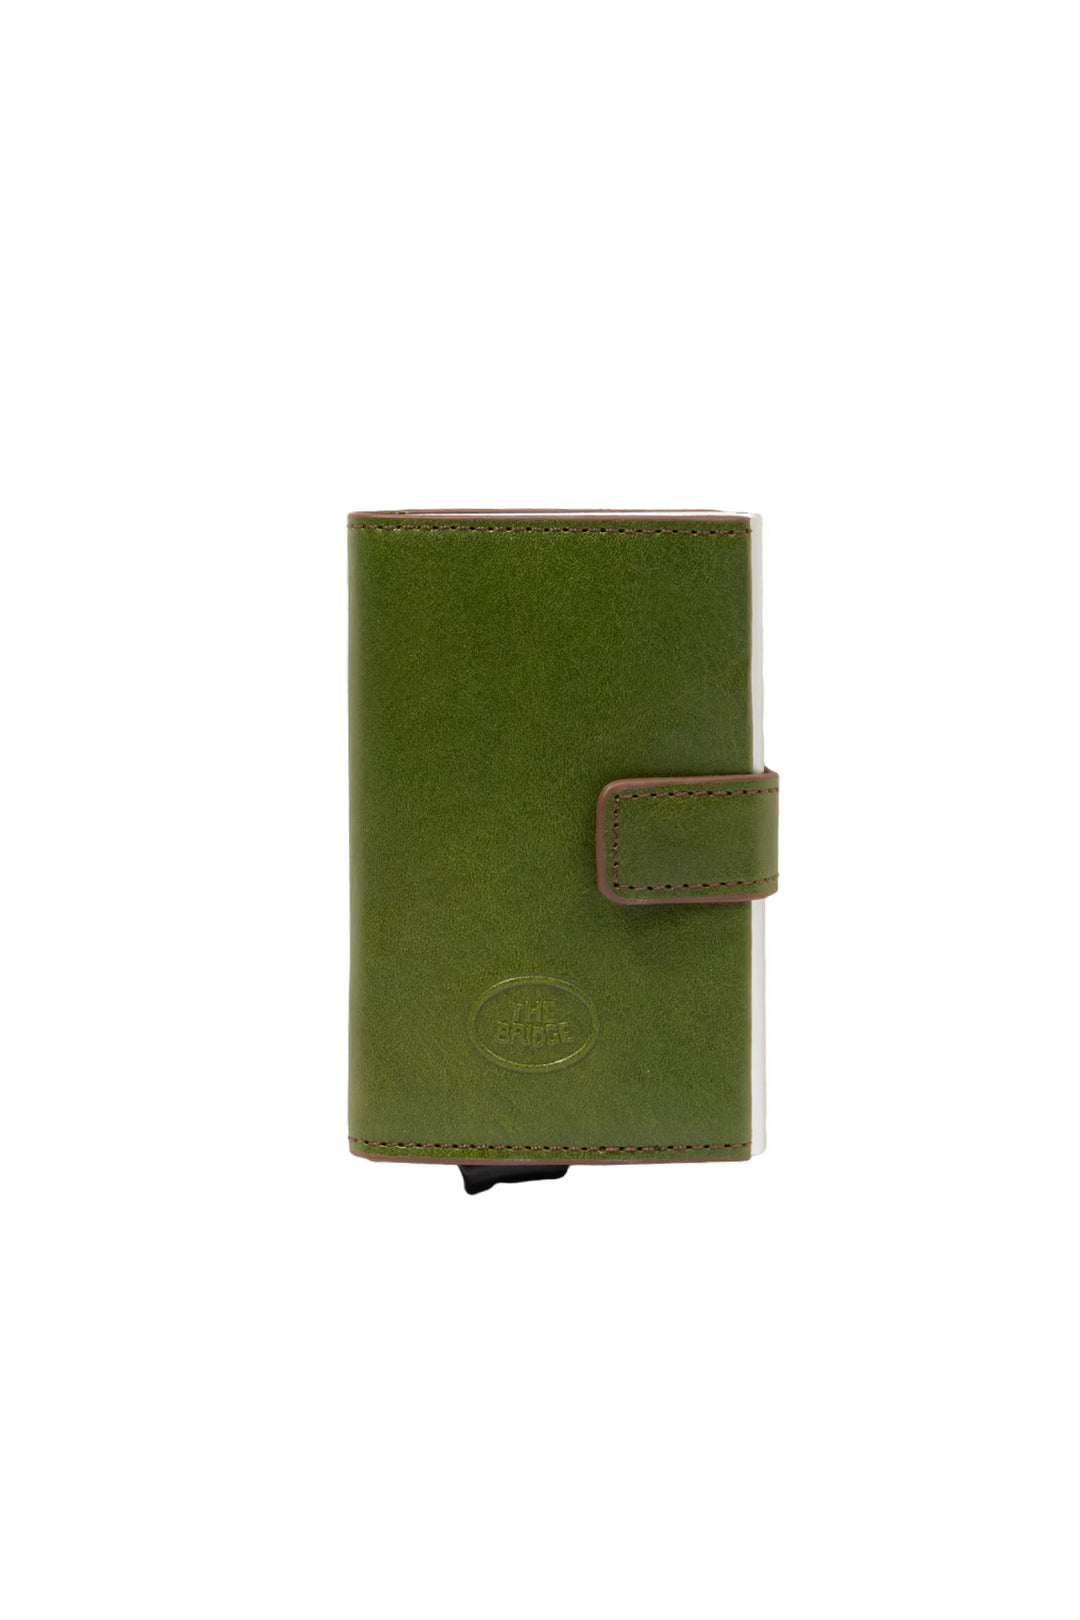 THE BRIDGE Porta carte di credito verde in pelle meccanismo pop-up - Mancinelli 1954